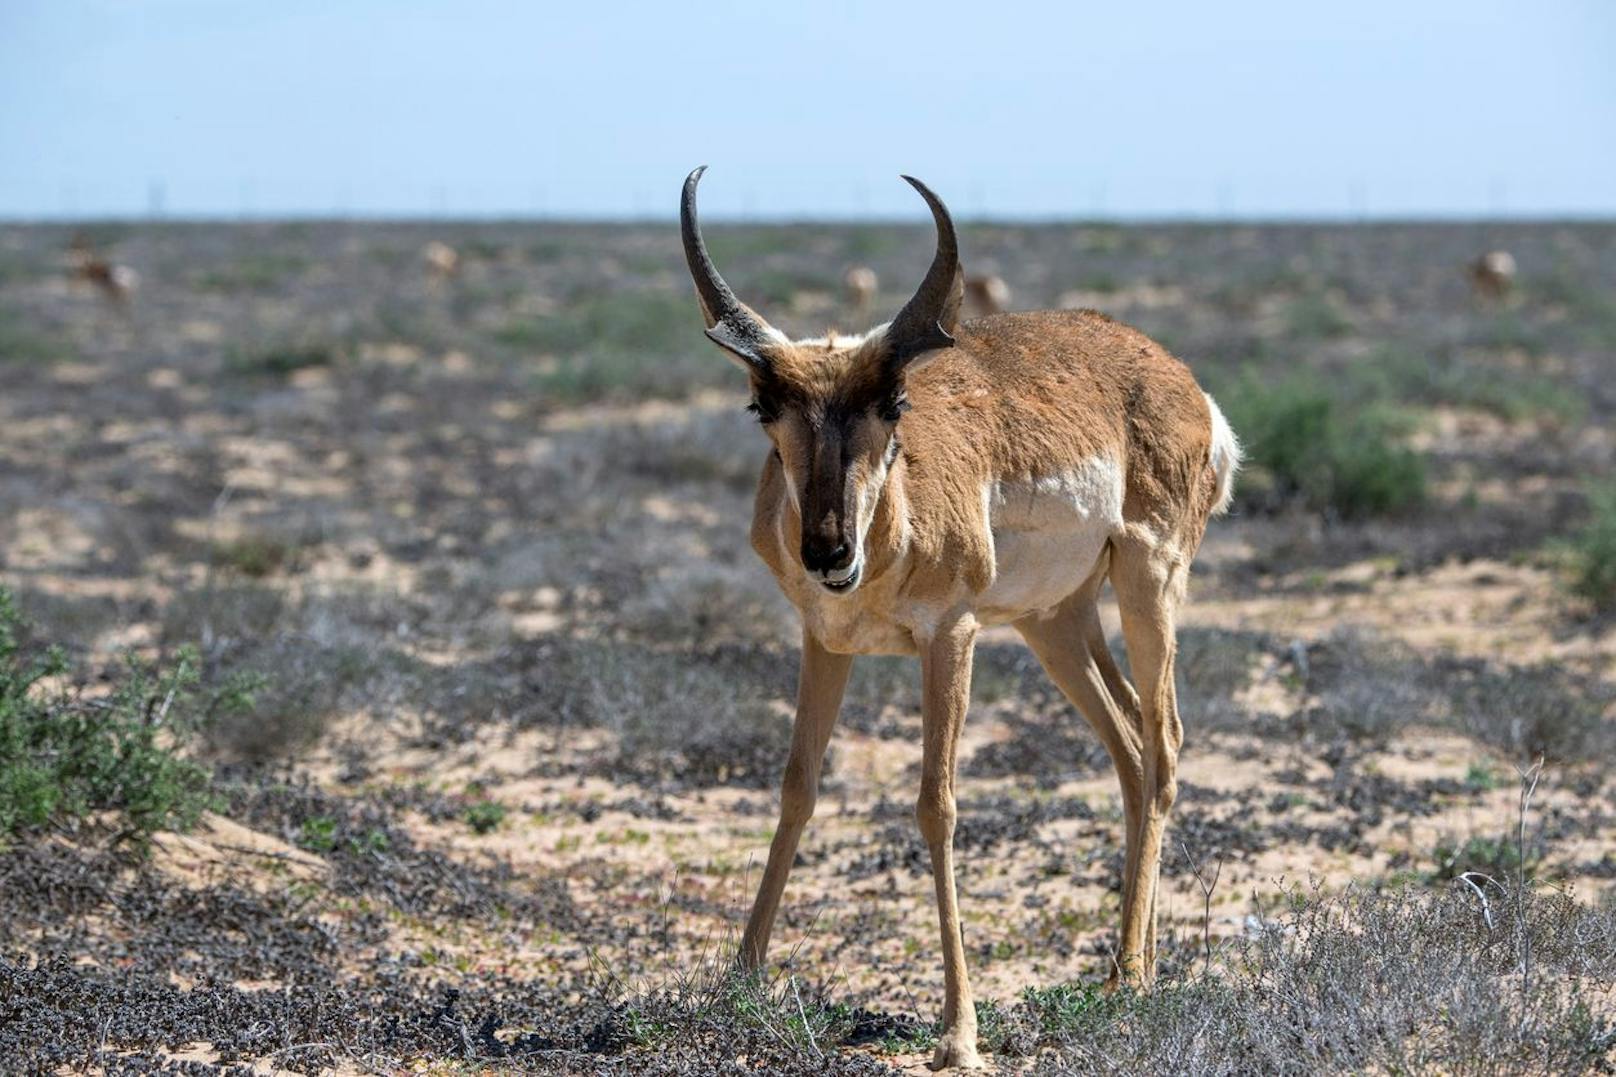 Ihm sieht man es auch nicht an, oder? Der Mexikanische Gabelbock erreicht eine Geschwindigkeit von 88 km/h. Damit ist er doppelt so schnell, wie seine natürlichen Feinde - Kojoten und Wölfe.